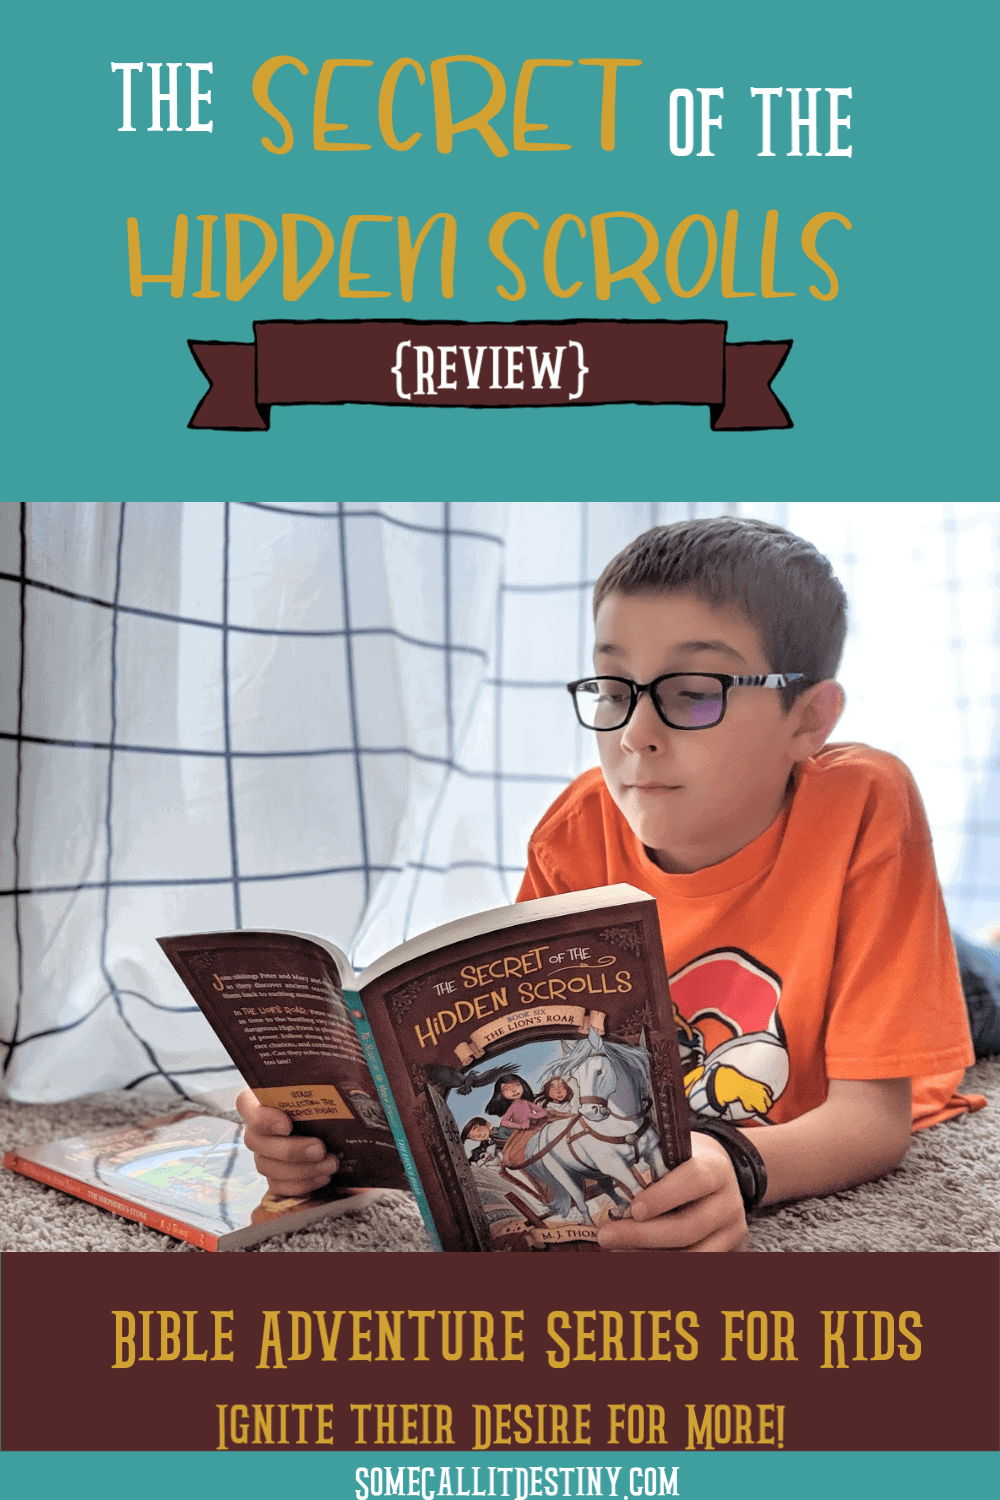 The Secret of the Hidden Scrolls book review